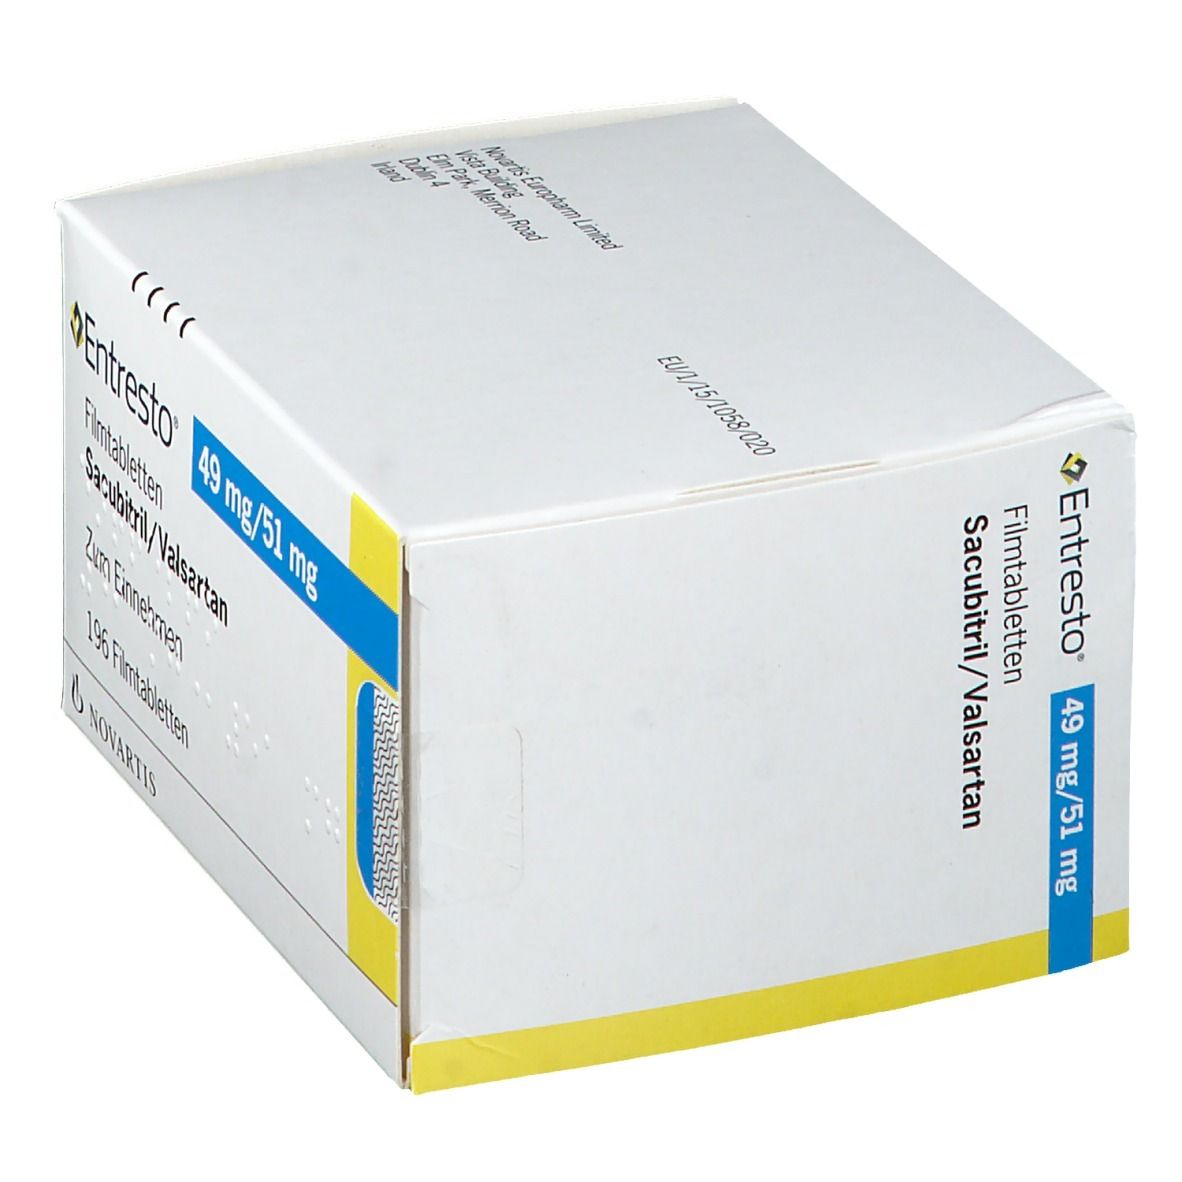 Entresto® 49 mg/51 mg